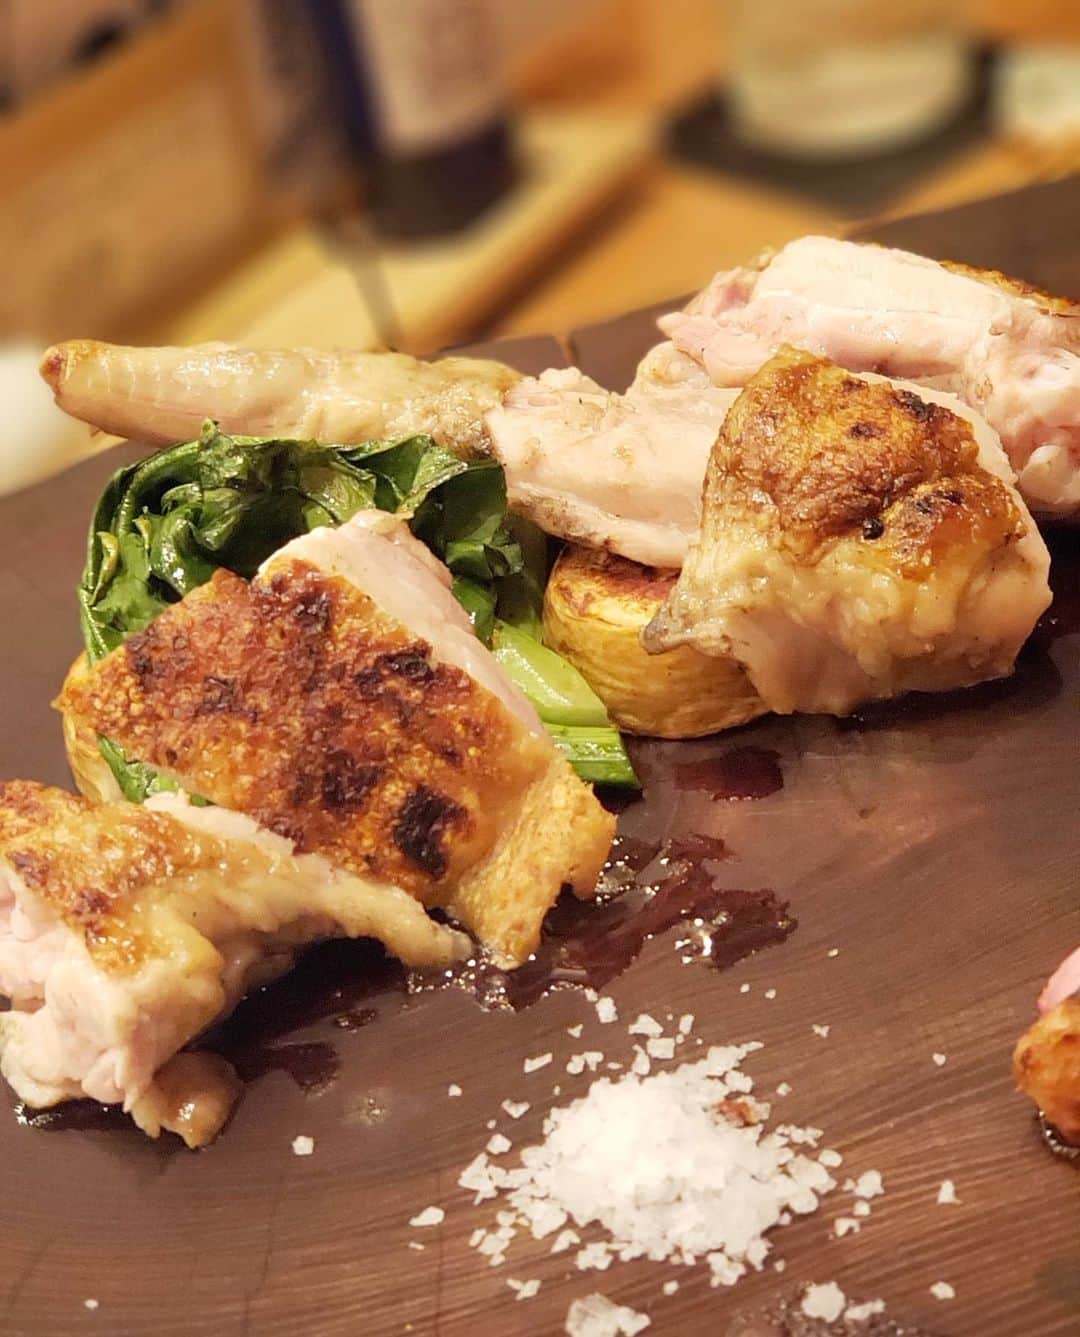 浪花ろばた 頂鯛 北新地店さんのインスタグラム写真 - (浪花ろばた 頂鯛 北新地店Instagram)「⠀⠀ こんにちは☀️⠀ 頂鯛北新地店の東です。⠀ ⠀ 今日は美味しい鶏料理を😋🍴⠀ ⠀ 地鶏の食べ比べ「七谷赤鶏」と「備中高原地鶏」⠀ ⠀ 七谷赤鶏は京都のブランド地鶏で、今ではミシュラン星付きのレストランでも使われるなど素晴らしい肉質の地鶏です。⠀ ⠀ 備中高原地鶏は岡山のブランド地鶏であっさりとした味わいのとても食べやすい肉質の地鶏です。⠀ ⠀ それぞれの肉質を考えて炭火焼や鉄板焼で調理してご提供します❗⠀ ⠀ 個人的には、鴨のような旨味のある七谷赤鶏が好きでーす😆🍴⠀ ⠀ 3食限定なので早い者勝ちです💡⠀ ⠀ どうぞご来店の際にはご賞味下さいね☺️⠀ ⠀ 予約は↓コチラにお電話が早いです。⠀ 06-6147-4377 ⠀ 浪花ろばた頂鯛 北新地店⠀ ⠀⠀⠀⠀ ━━━━━━━━━━━━━━━━👨🏻‍🍳⠀⠀⠀⠀⠀⠀ .....@mottox_planing.official 🍷🍶✨⠀⠀⠀⠀⠀⠀ ・・・・・・・・・・・・・・・・・・・⠀⠀⠀⠀⠀⠀ .🍽姉妹店🍽⠀⠀⠀⠀⠀⠀ .Madre-マドレ-⠀⠀⠀⠀ .....@madre_seiseki.official⠀⠀⠀⠀ ⠀⠀⠀⠀ ★NEW OPEN★2020/11/9★⠀⠀⠀⠀ .浪花ろばた 頂鯛LUCUA大阪店⠀⠀⠀⠀⠀⠀ .....@itadakitai_lucua.official⠀⠀⠀⠀⠀⠀ ⠀⠀⠀⠀ .炭火焼とワインの酒場 VOLTA北新地店⠀⠀⠀⠀ .....@volta_kitashinchi.official⠀⠀⠀⠀⠀⠀ ⠀⠀⠀ .炭と地酒とたしなみワイン Kai本店 醸す⠀⠀⠀⠀ .....@kai_honten.official⠀⠀⠀⠀⠀⠀ 👨🏻‍🌾━━━━━━━━━━━━━━━━👩🏻‍🌾⠀⠀⠀⠀⠀⠀ ⠀⠀ #頂鯛#itadakitai#北新地#北新地グルメ#大阪#大阪グルメ#インスタ映え#日本酒#ワイン#オシャレ#居酒屋#グルメ#グルメ好きと繋がりたい#ディナー#北新地ディナー#大阪ディナー#地鶏食べ比べ#七谷赤鶏#備中高原地鶏#炭火焼#鉄板焼#pic2が七谷赤鶏#pic3が備中高原地鶏#分からんよね#食べたら分かる」11月11日 12時50分 - itadakitai.official